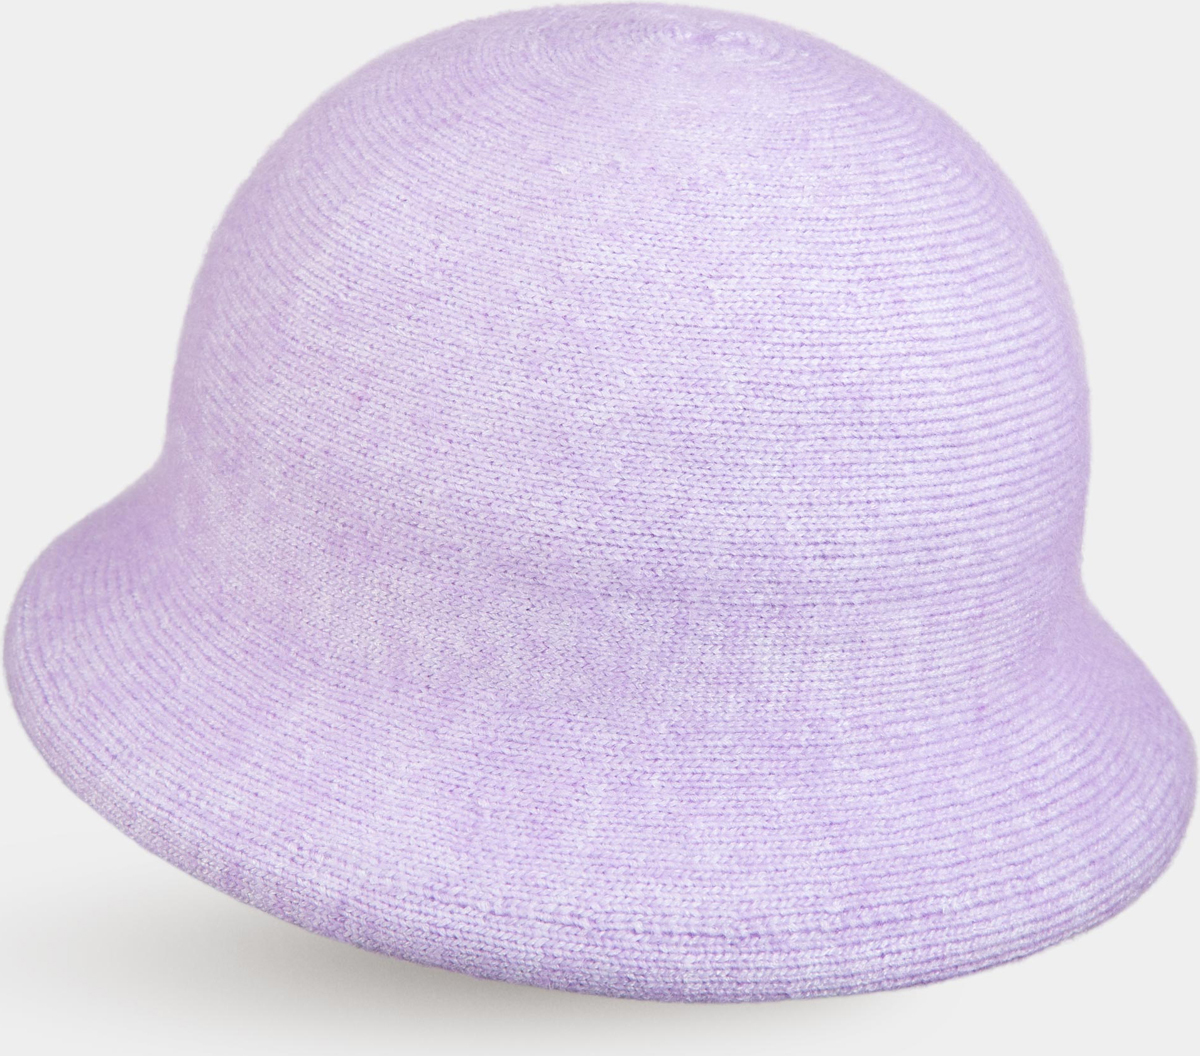 Шляпа женская Canoe Dolli, цвет: лавандовый. 4846238. Размер 56/58